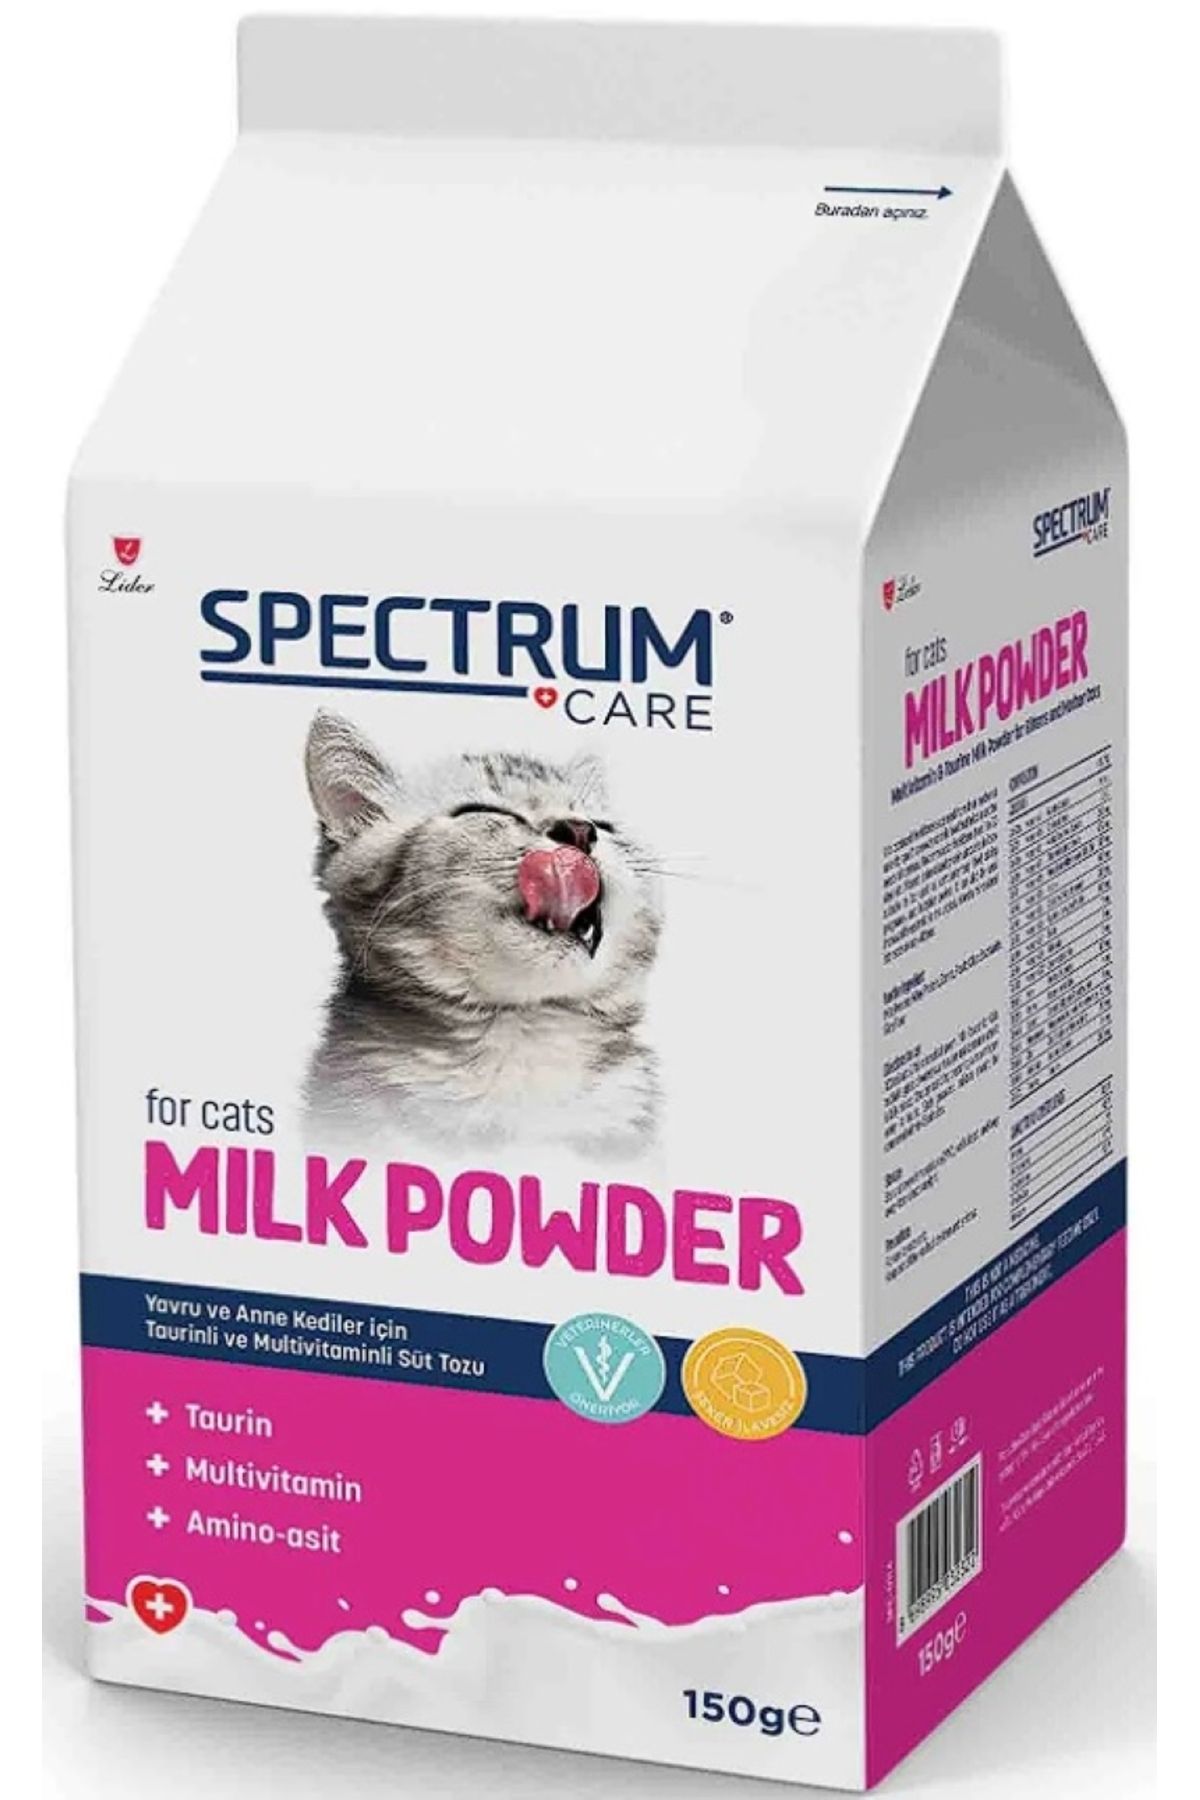 Spectrum Care Yavru ve Anne Kediler için Taurin ve Multivitaminli Süt Tozu 150gr